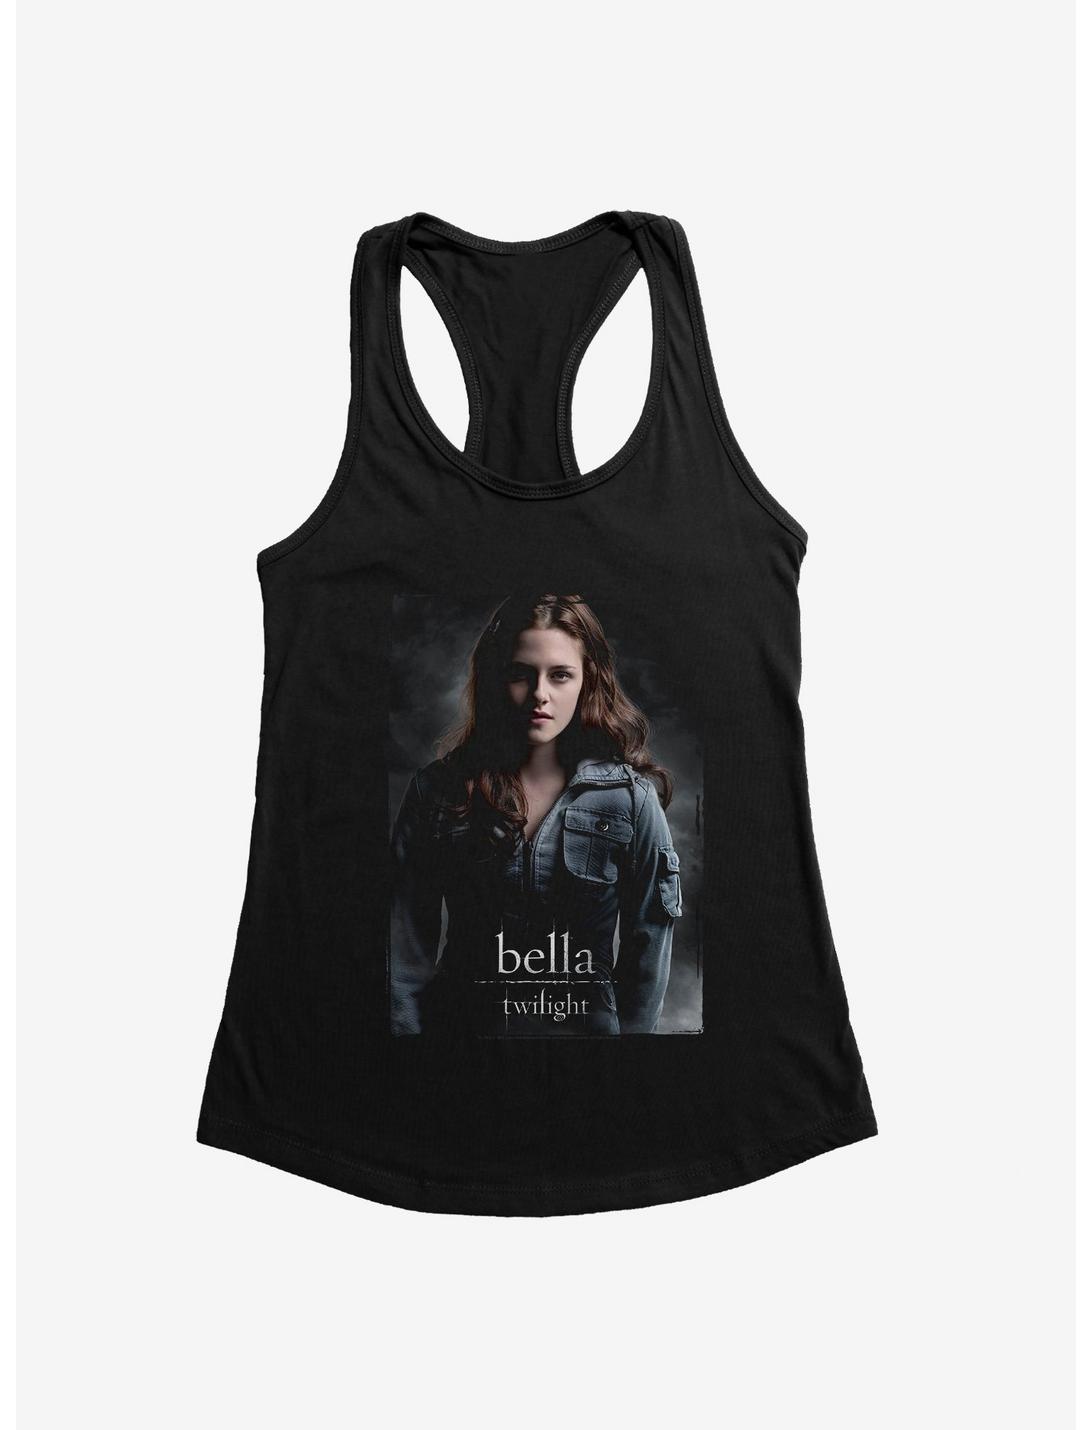 Twilight Bella Womens Tank Top, BLACK, hi-res